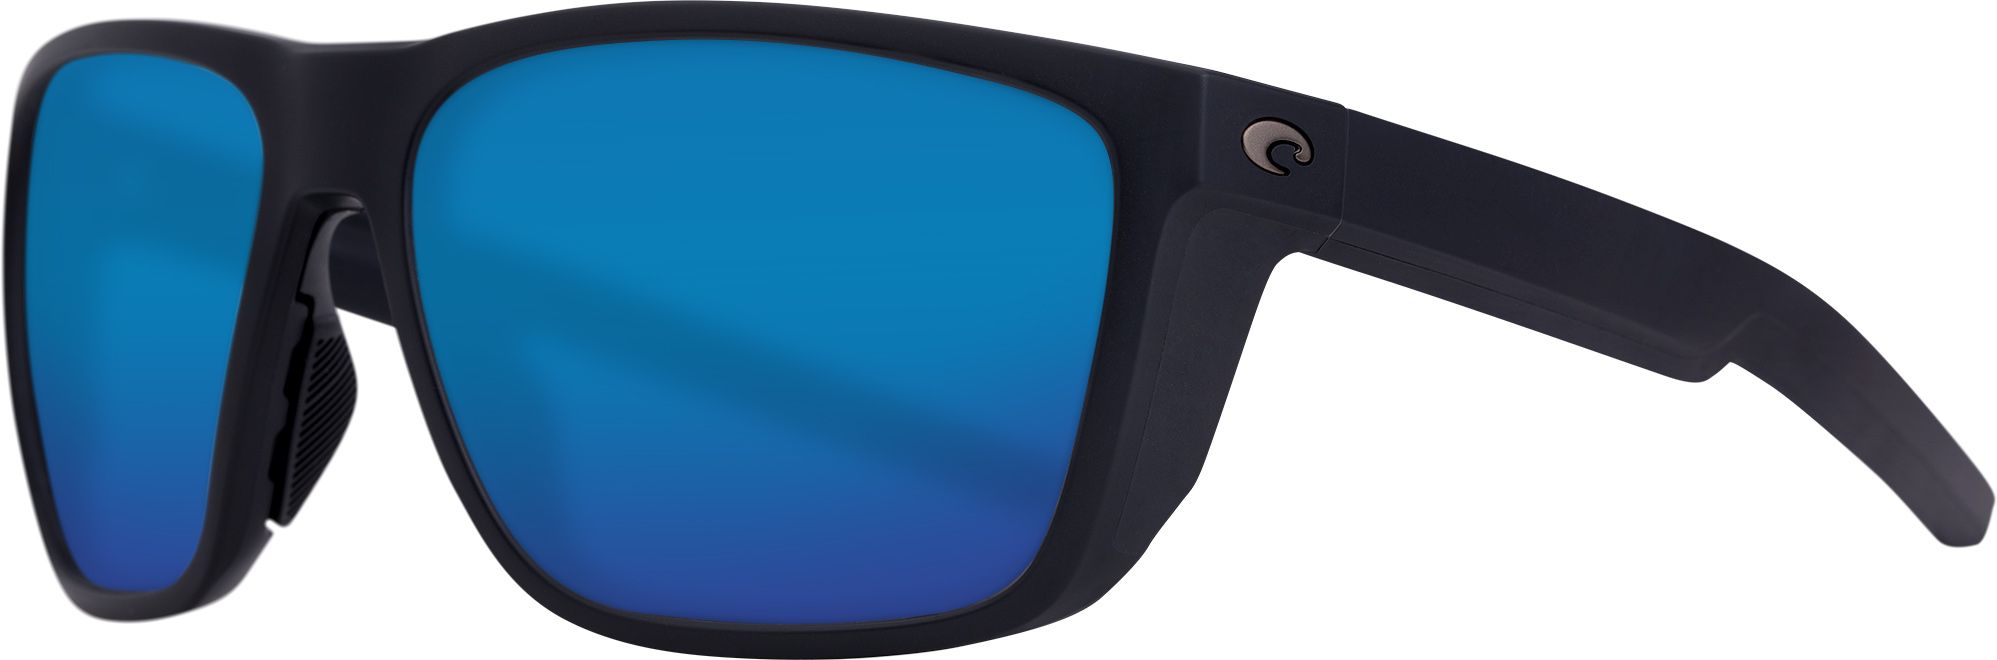 Photos - Sunglasses Costa Del Mar Ferg 580G , Men's, Black/Blue | Father's Day Gift 